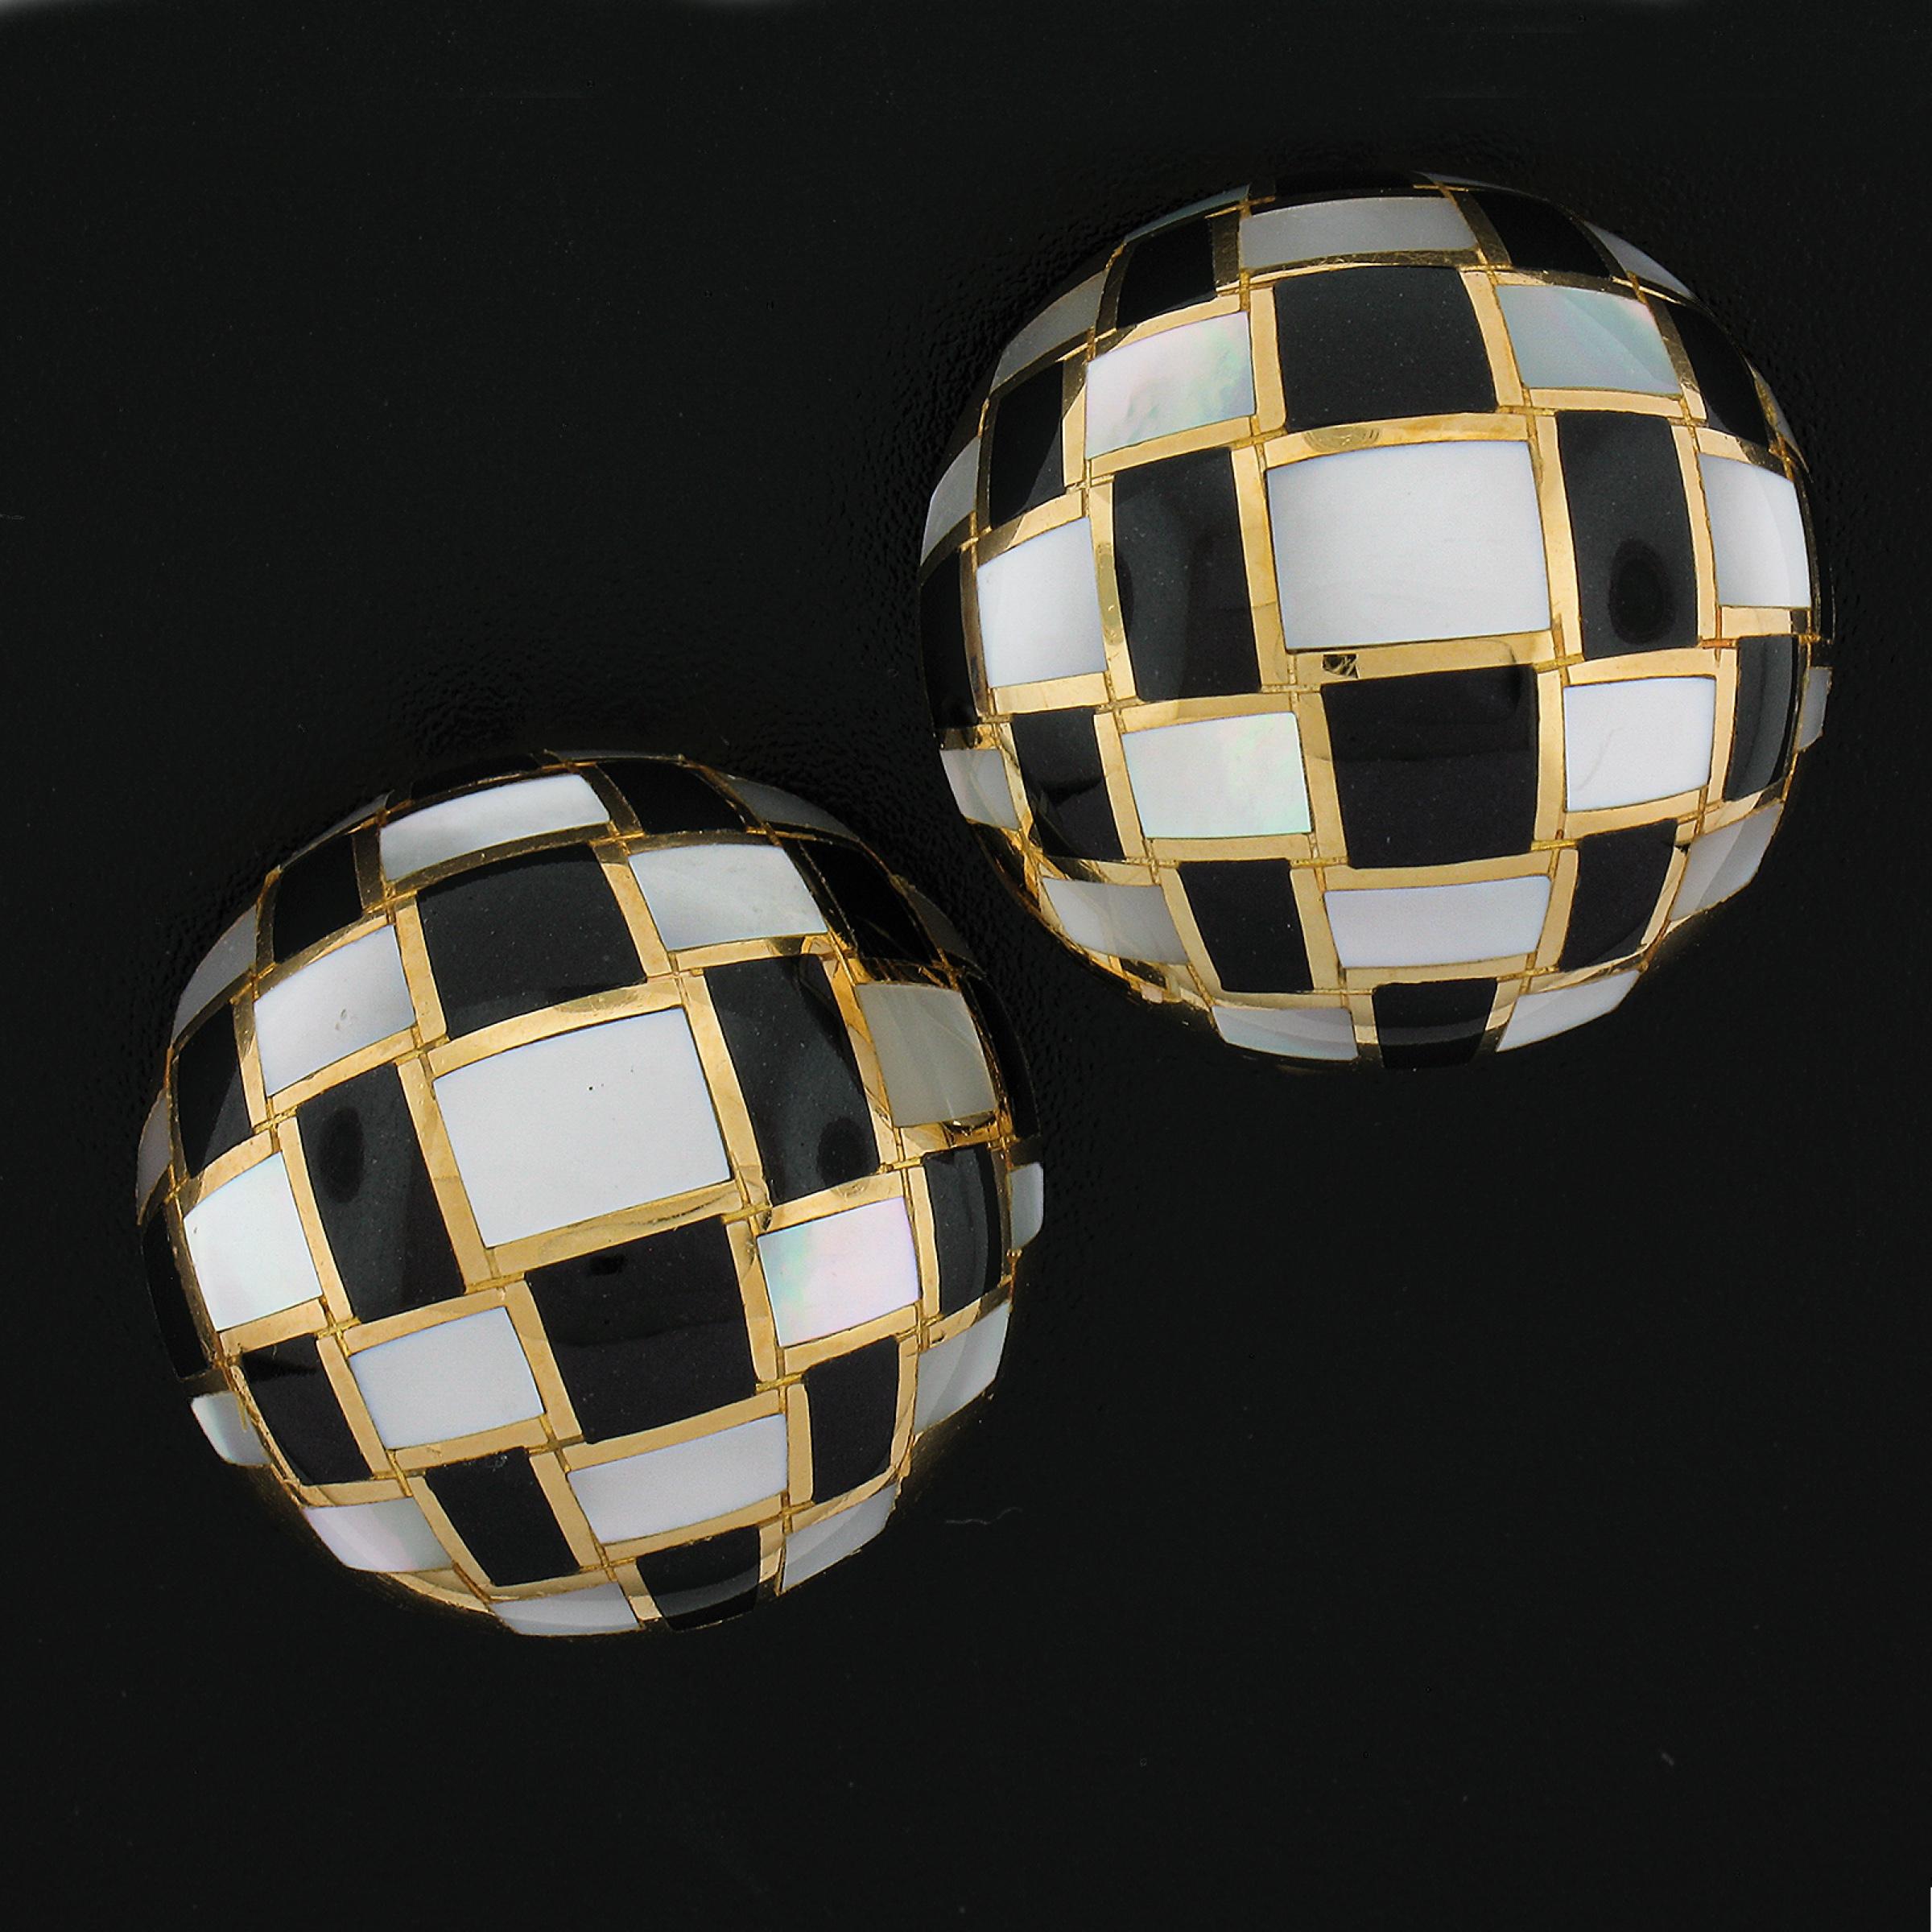 --Stein(e):--
Zahlreiche natürliche echte schwarze Onyx & Perlmutt - Custom Cut - Intarsien Set - Schwarz & Weiß Farbe

MATERIAL: Massives 18k Gelbgold
Gewicht: 25,20 Gramm
Rückendeckung:	Clip-On-Verschlüsse (Ohrlöcher sind NICHT